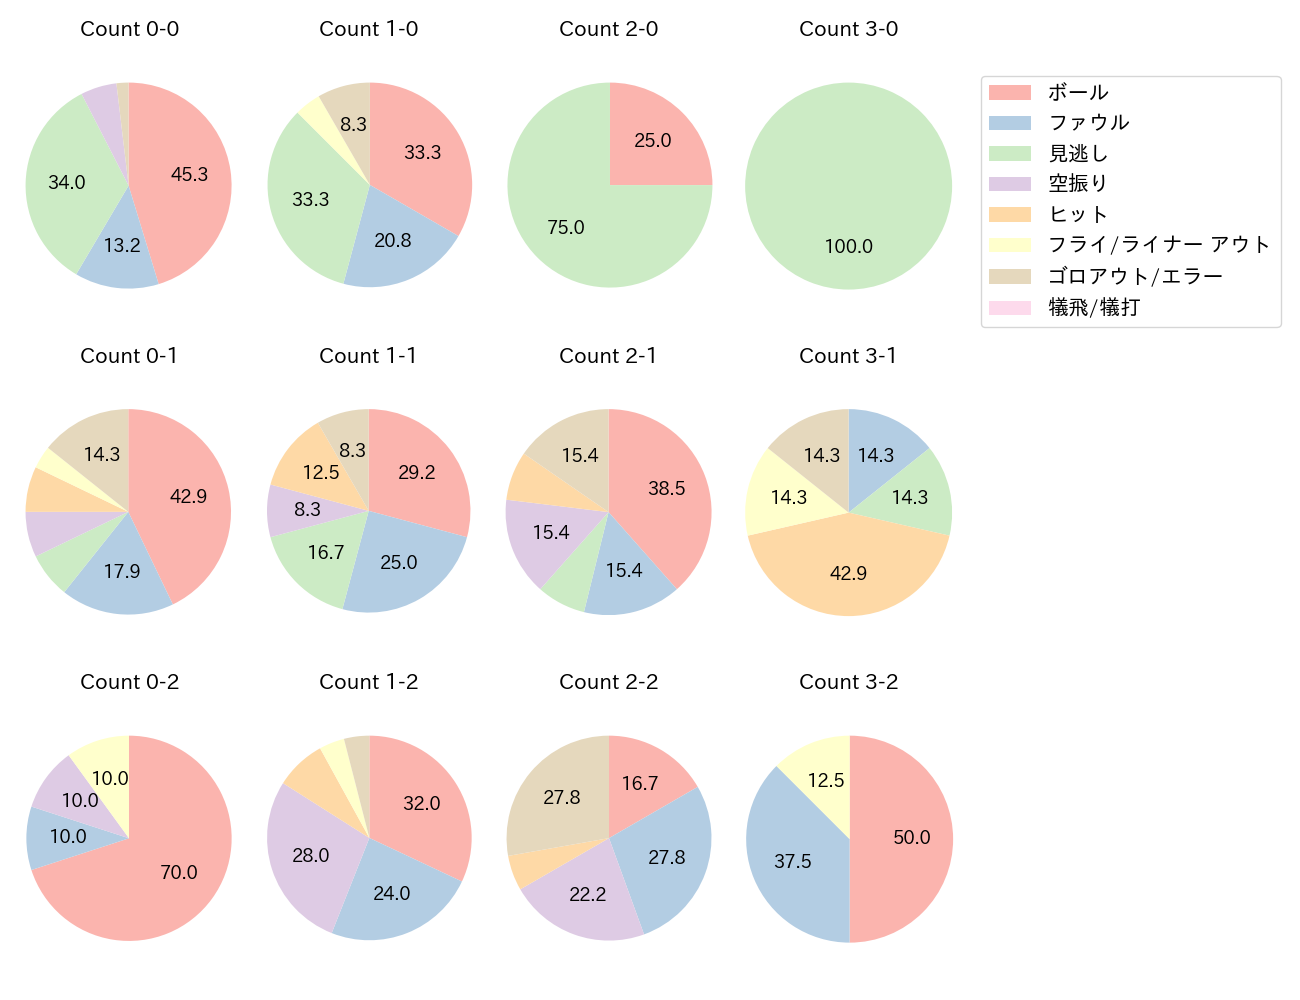 梅野 隆太郎の球数分布(2021年8月)